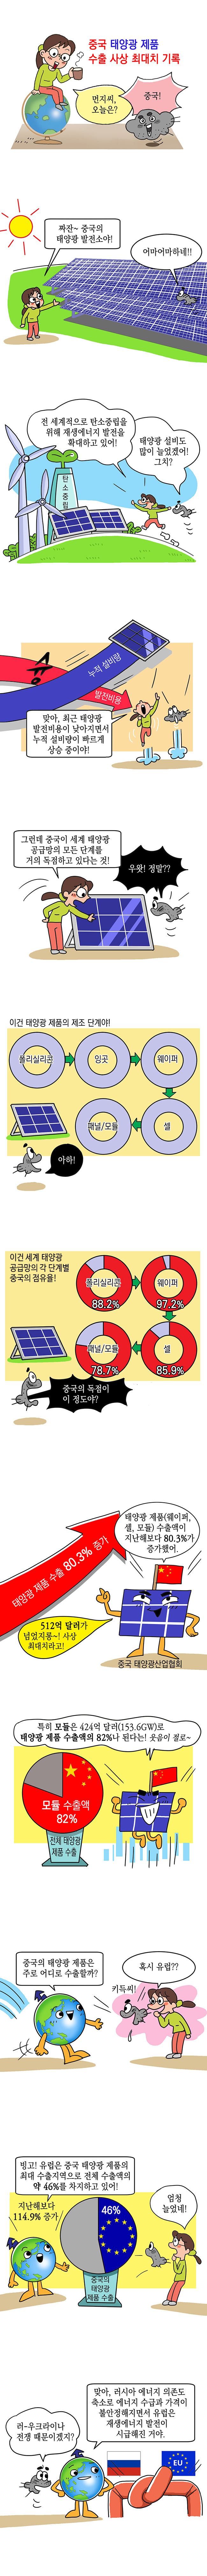 중국 태양광 제품 수출 사상 최대치 기록